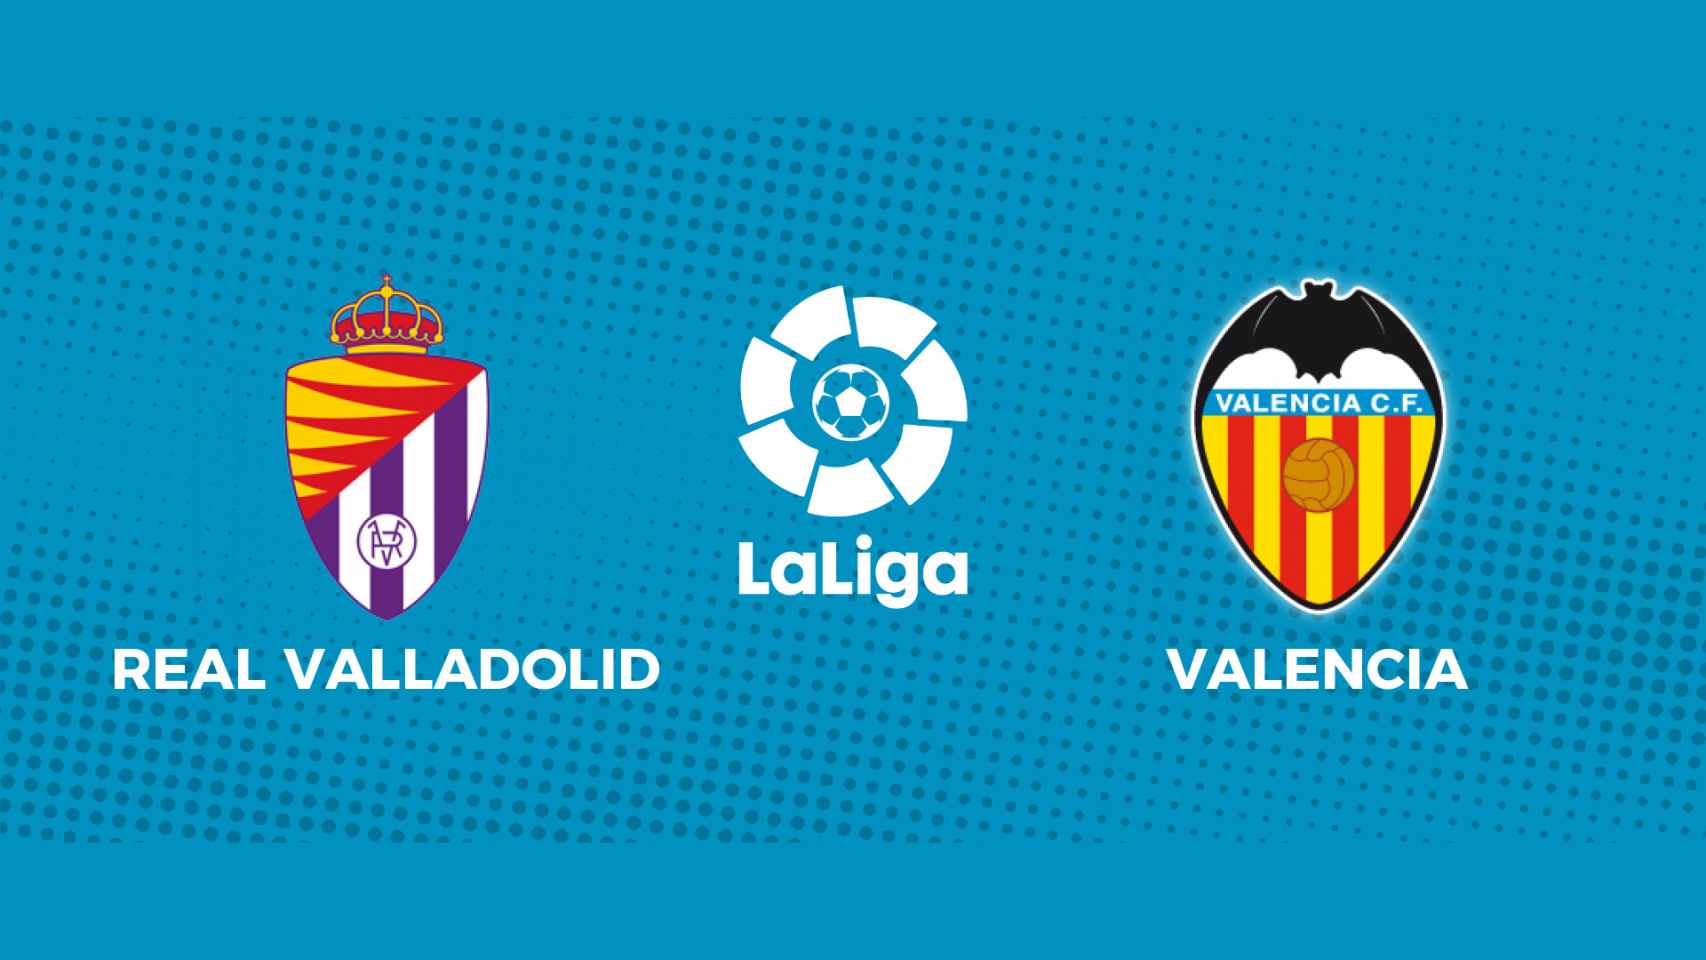 Valladolid - Valencia, La Liga en directo